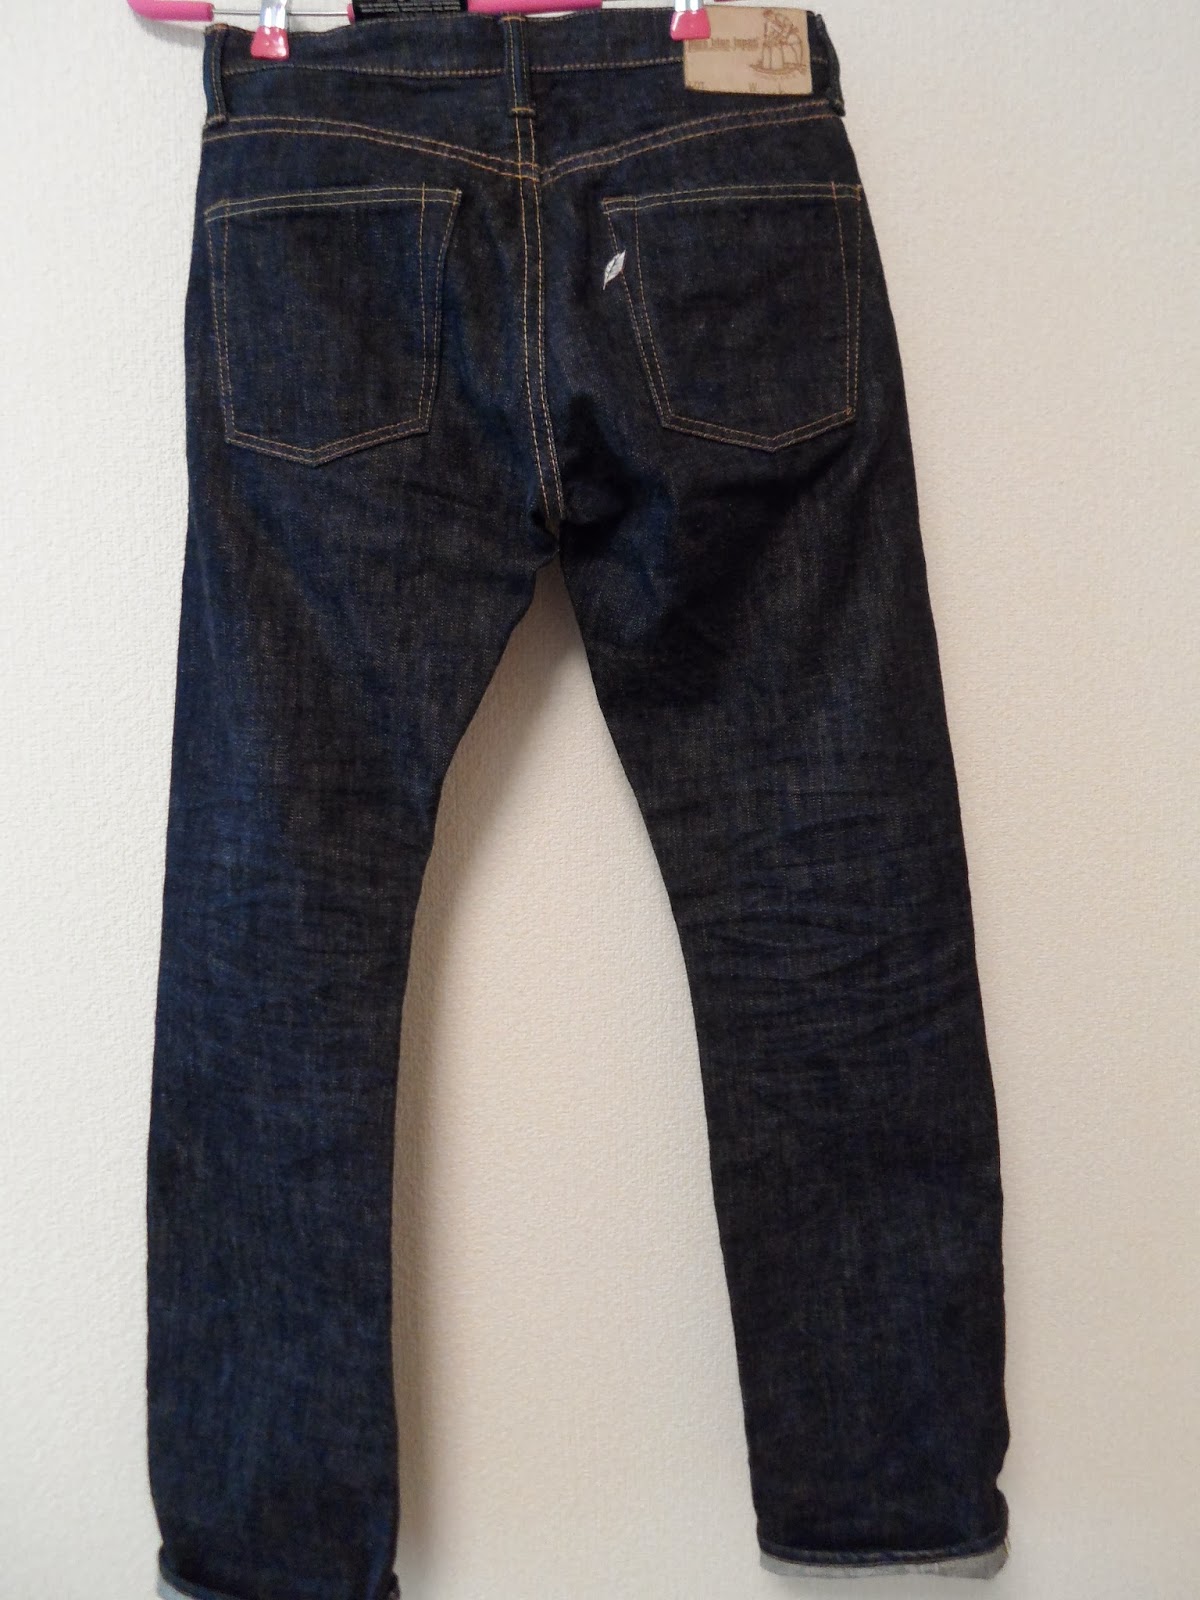 LANEE BUNDLE: Jeans Pure Blue Japan 14oz (SOLD)